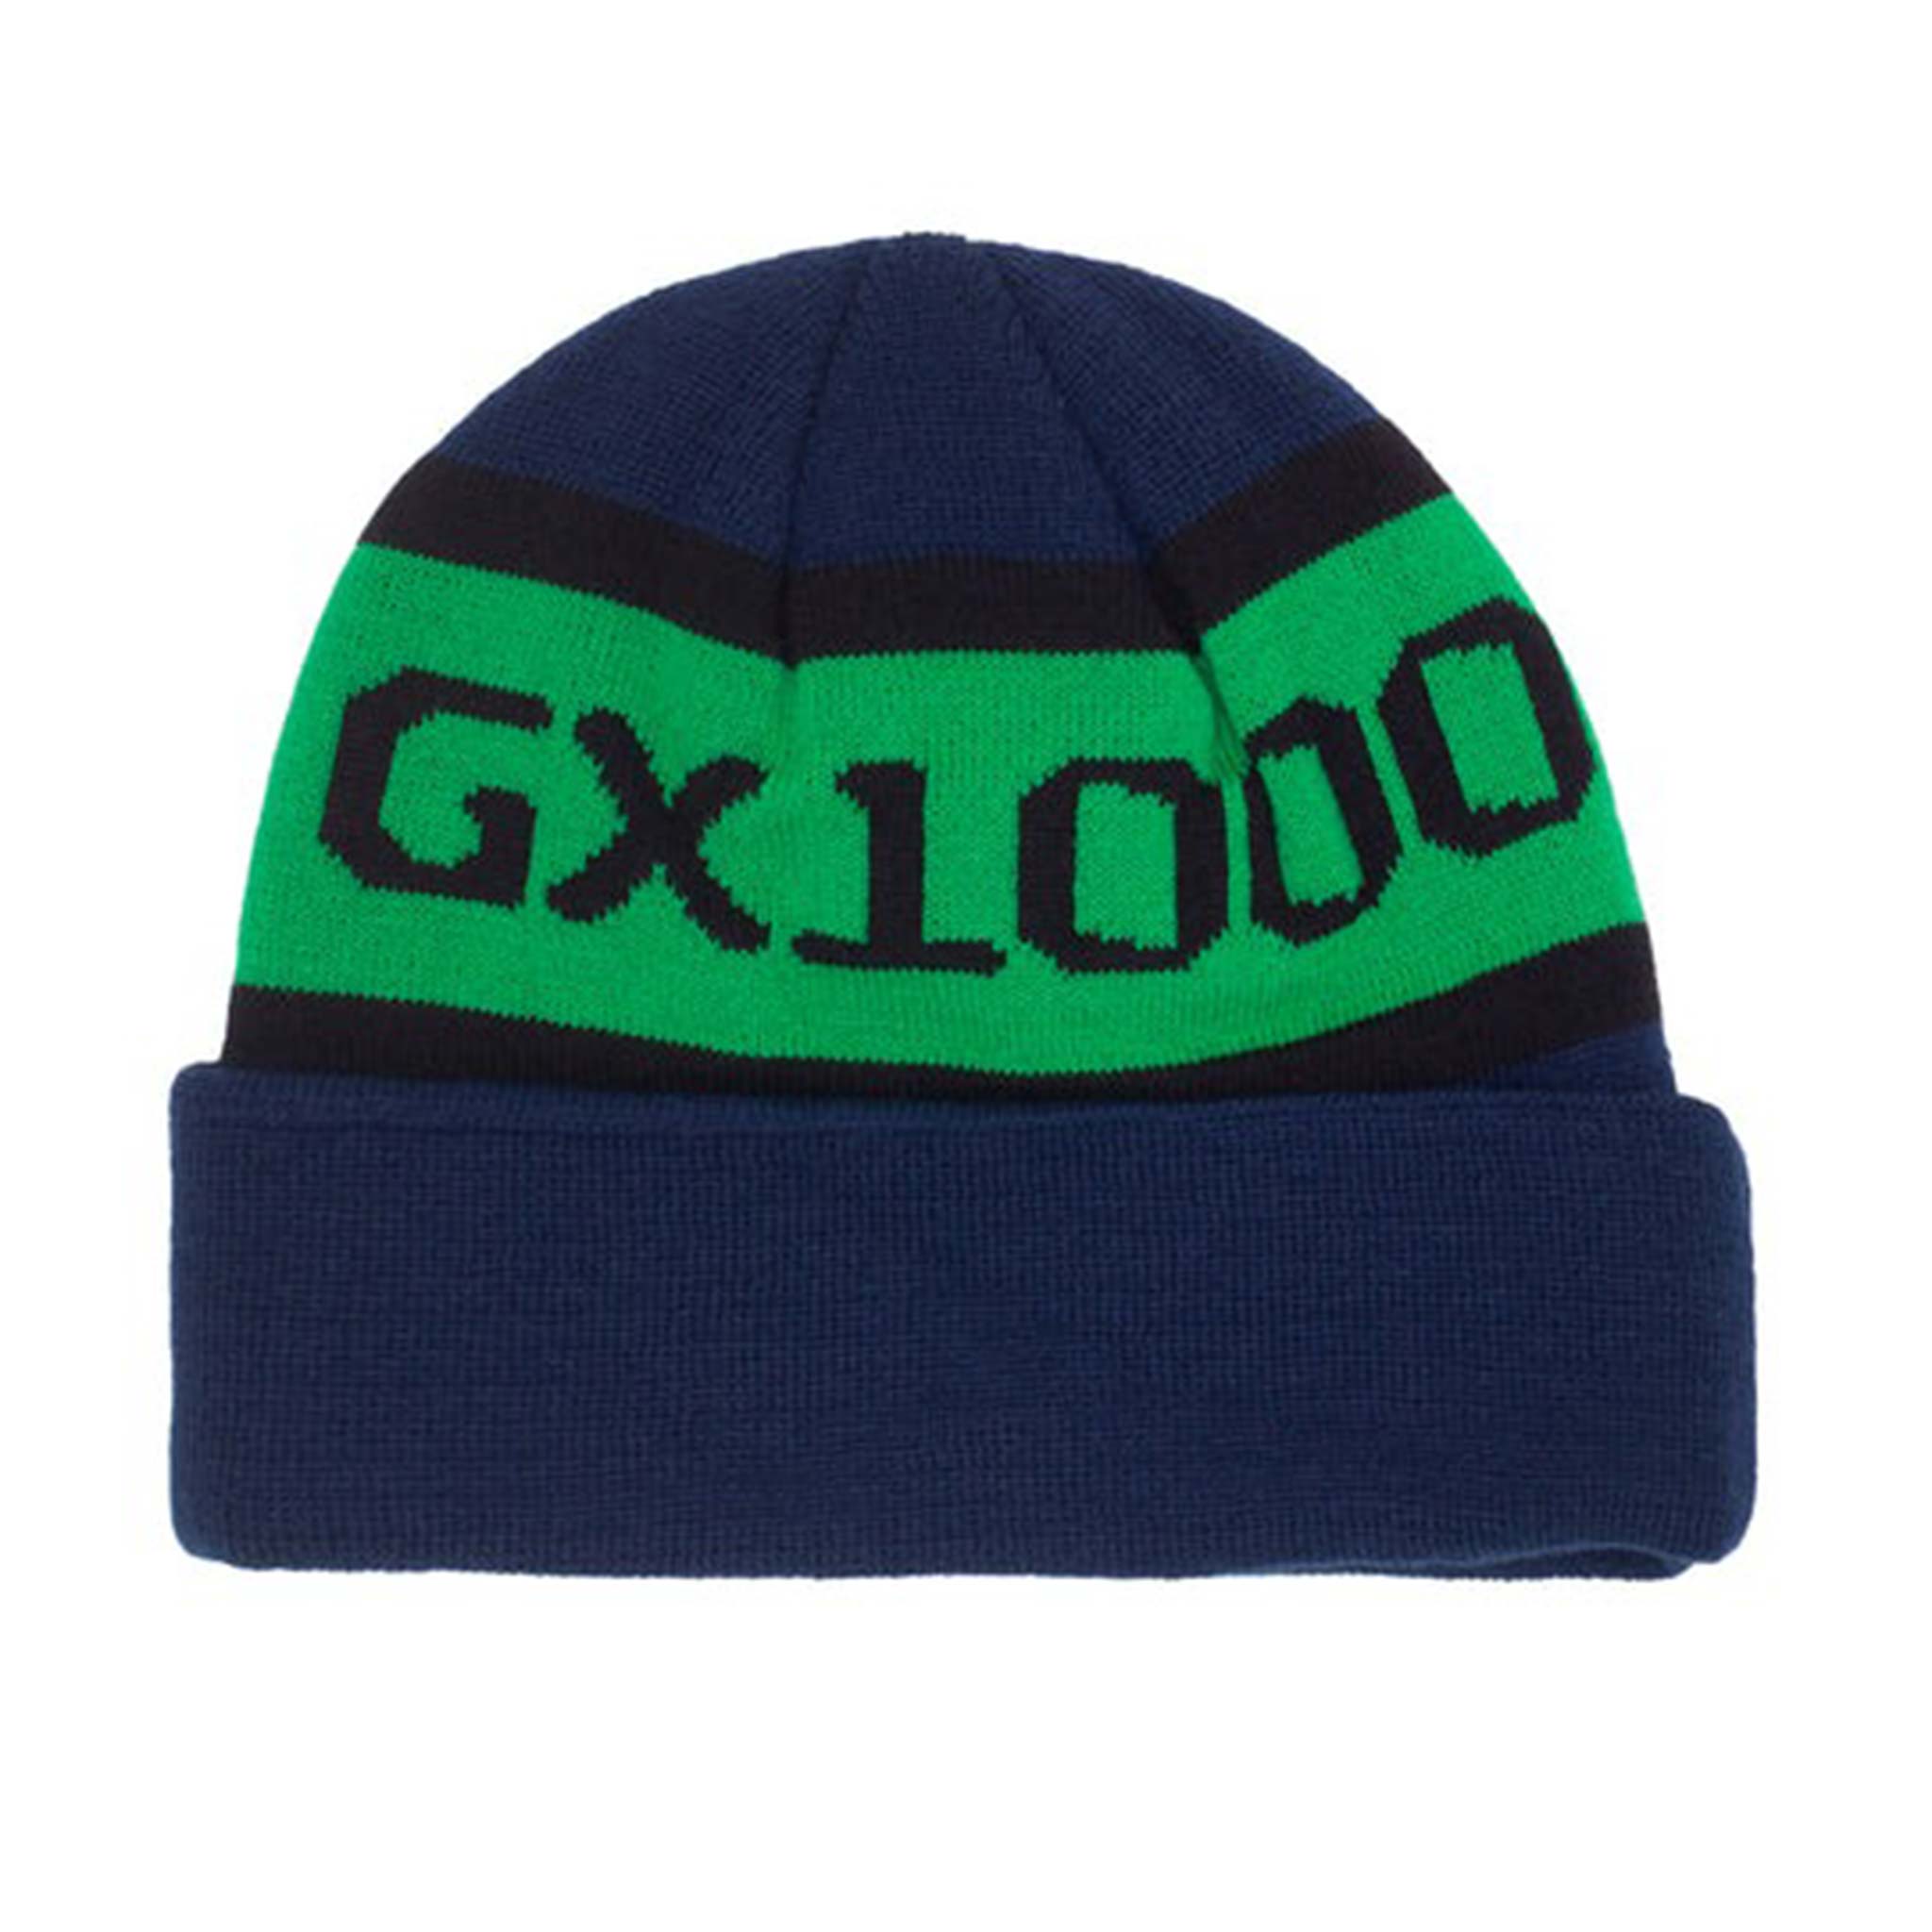 GX1000 OG LOGO BEANIE BLUE 【 ジーエックス1000 オージー